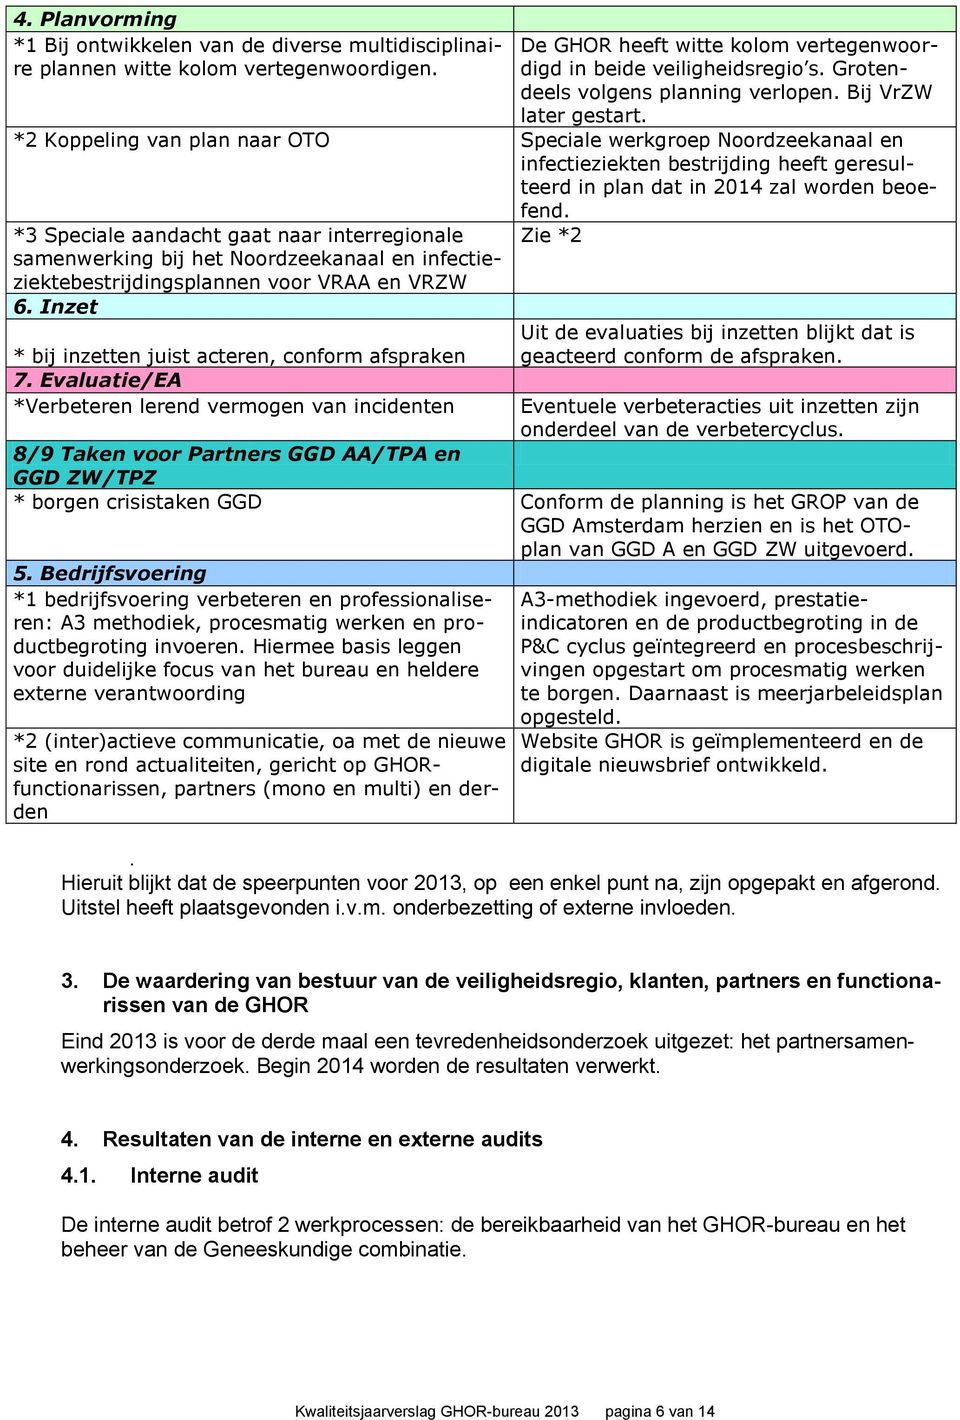 *2 Koppeling van plan naar OTO Speciale werkgroep Noordzeekanaal en infectieziekten bestrijding heeft geresulteerd in plan dat in 2014 zal worden beoefend.